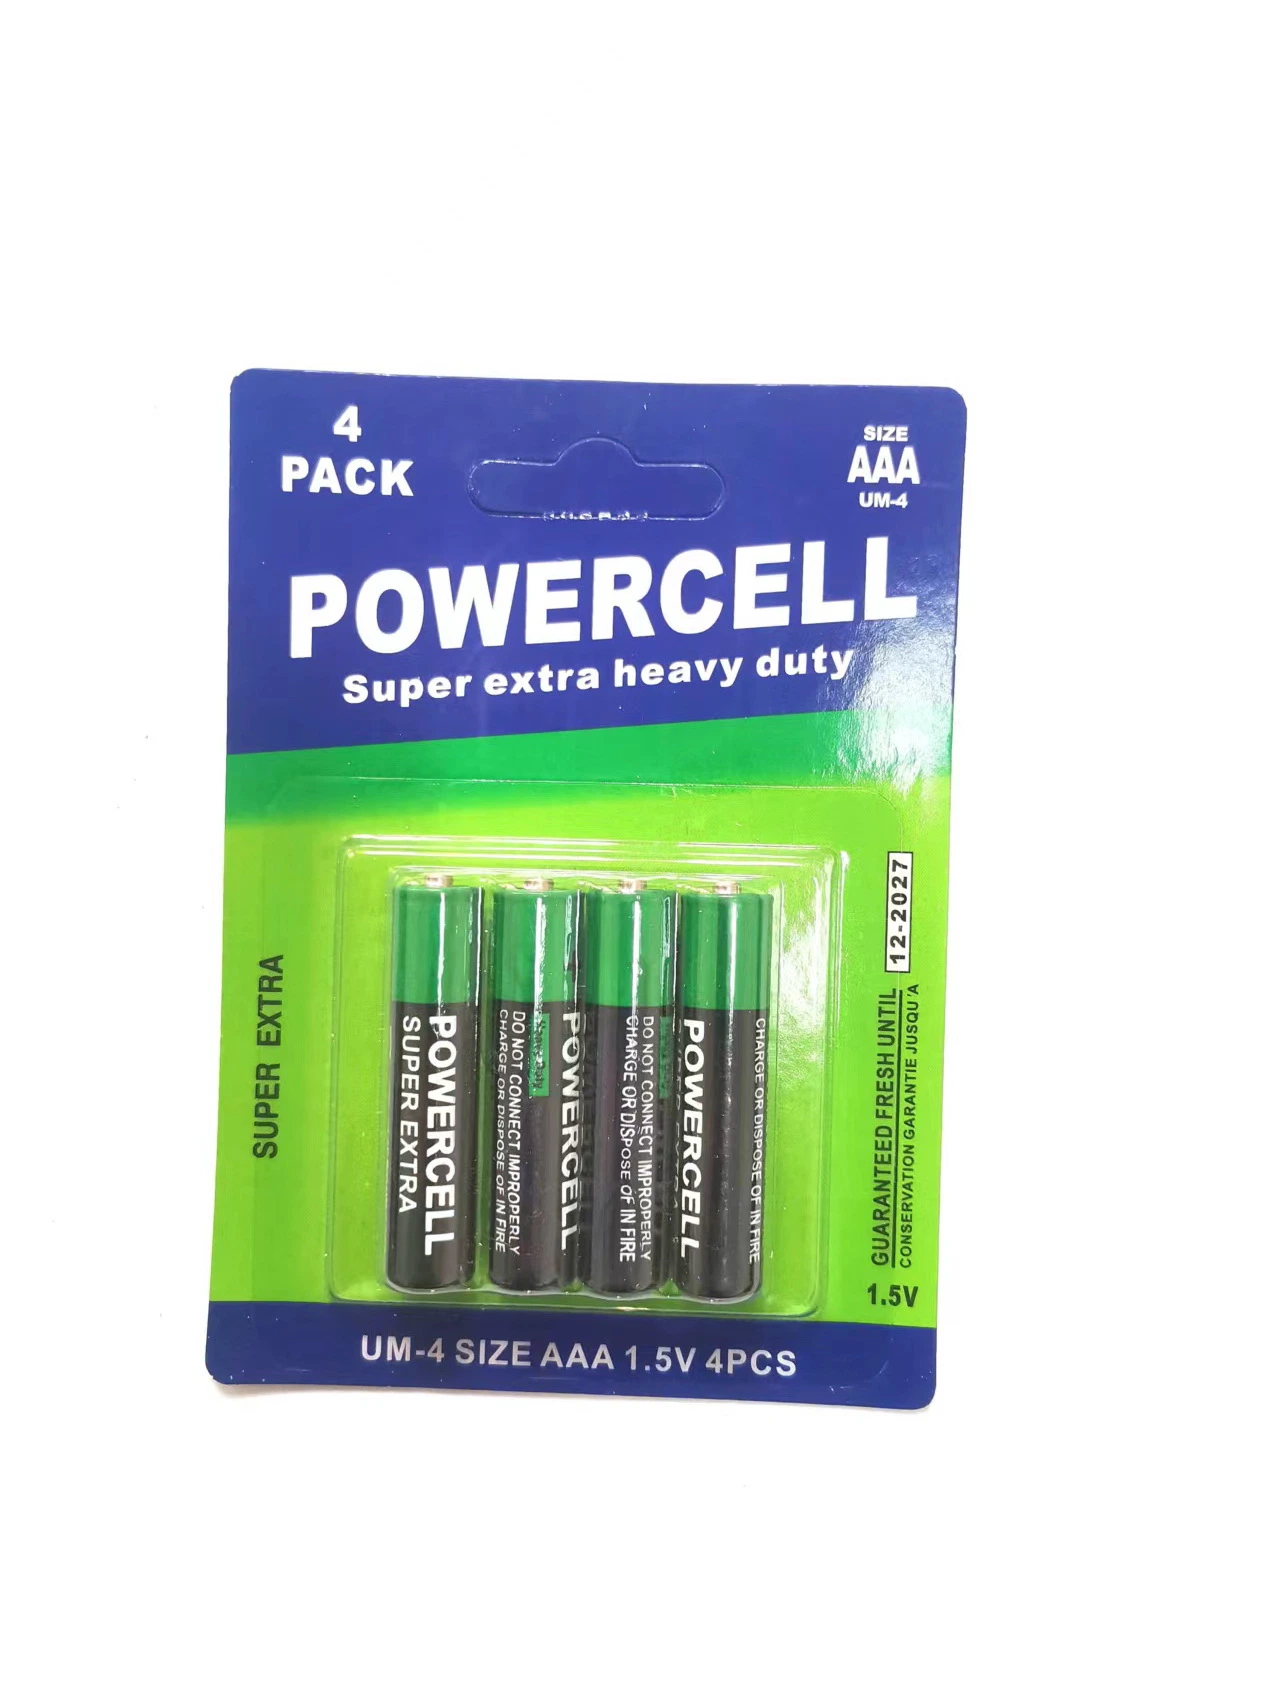 Batterie principale OEM batterie 1.5V R6 UM-3 pour grand public Batterie pour outils électroniques/électriques